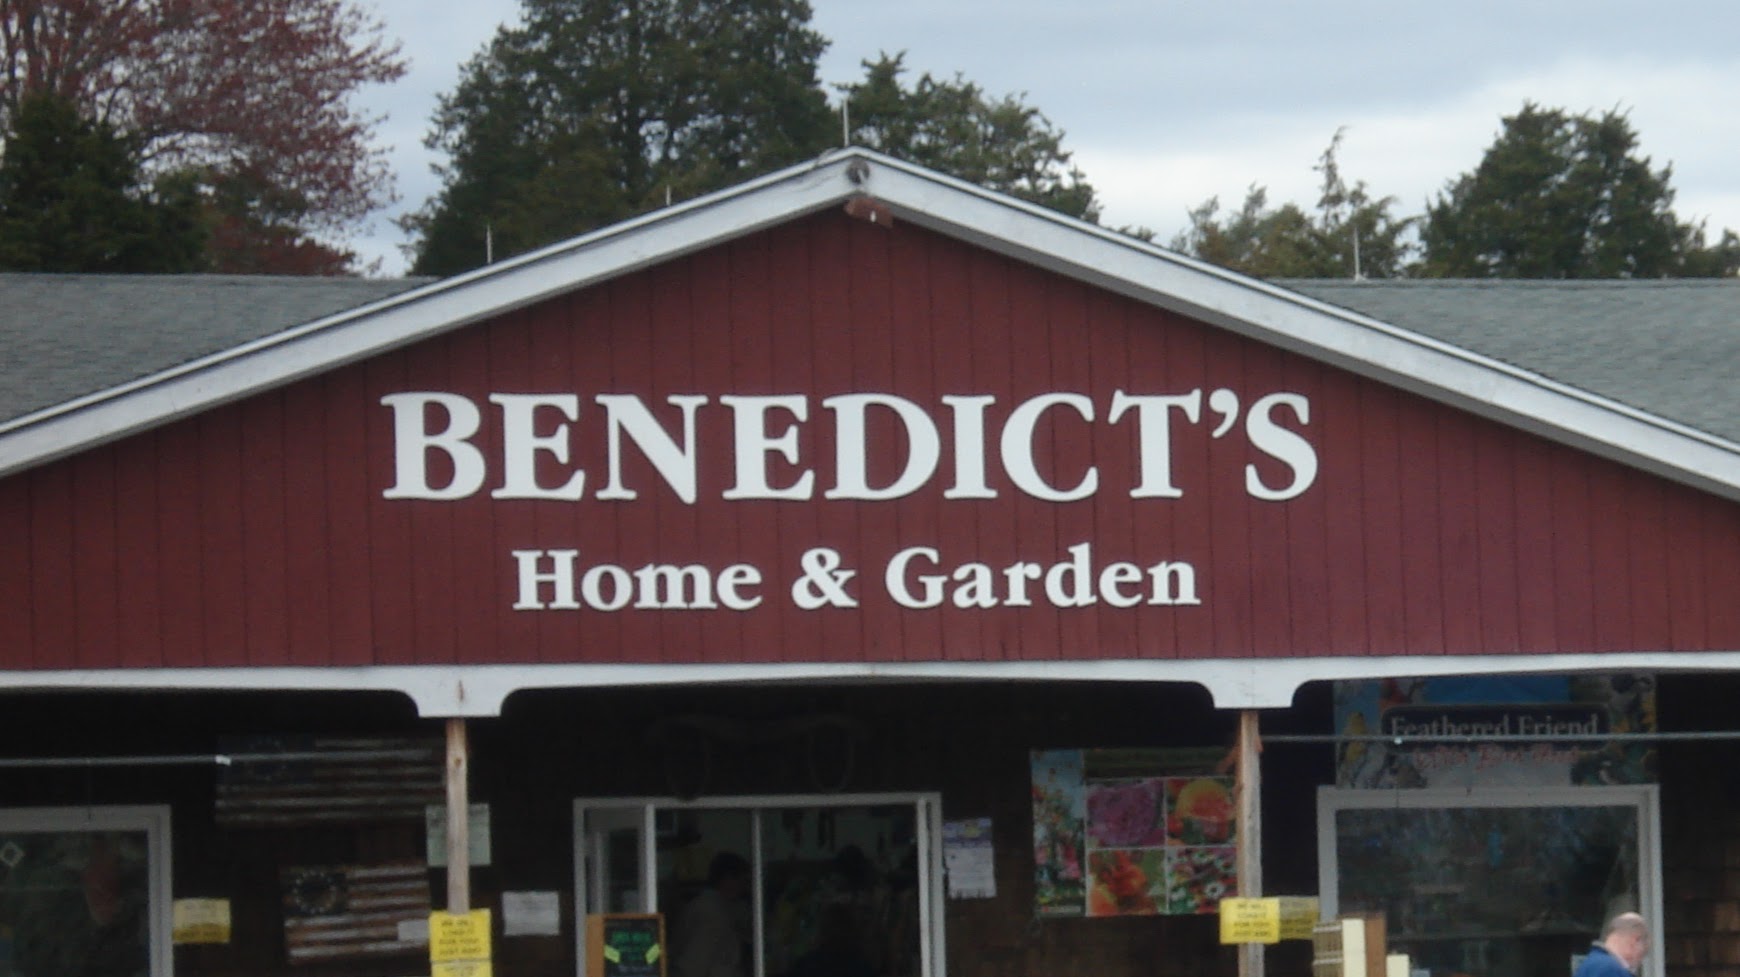 Benedict's Home & Garden